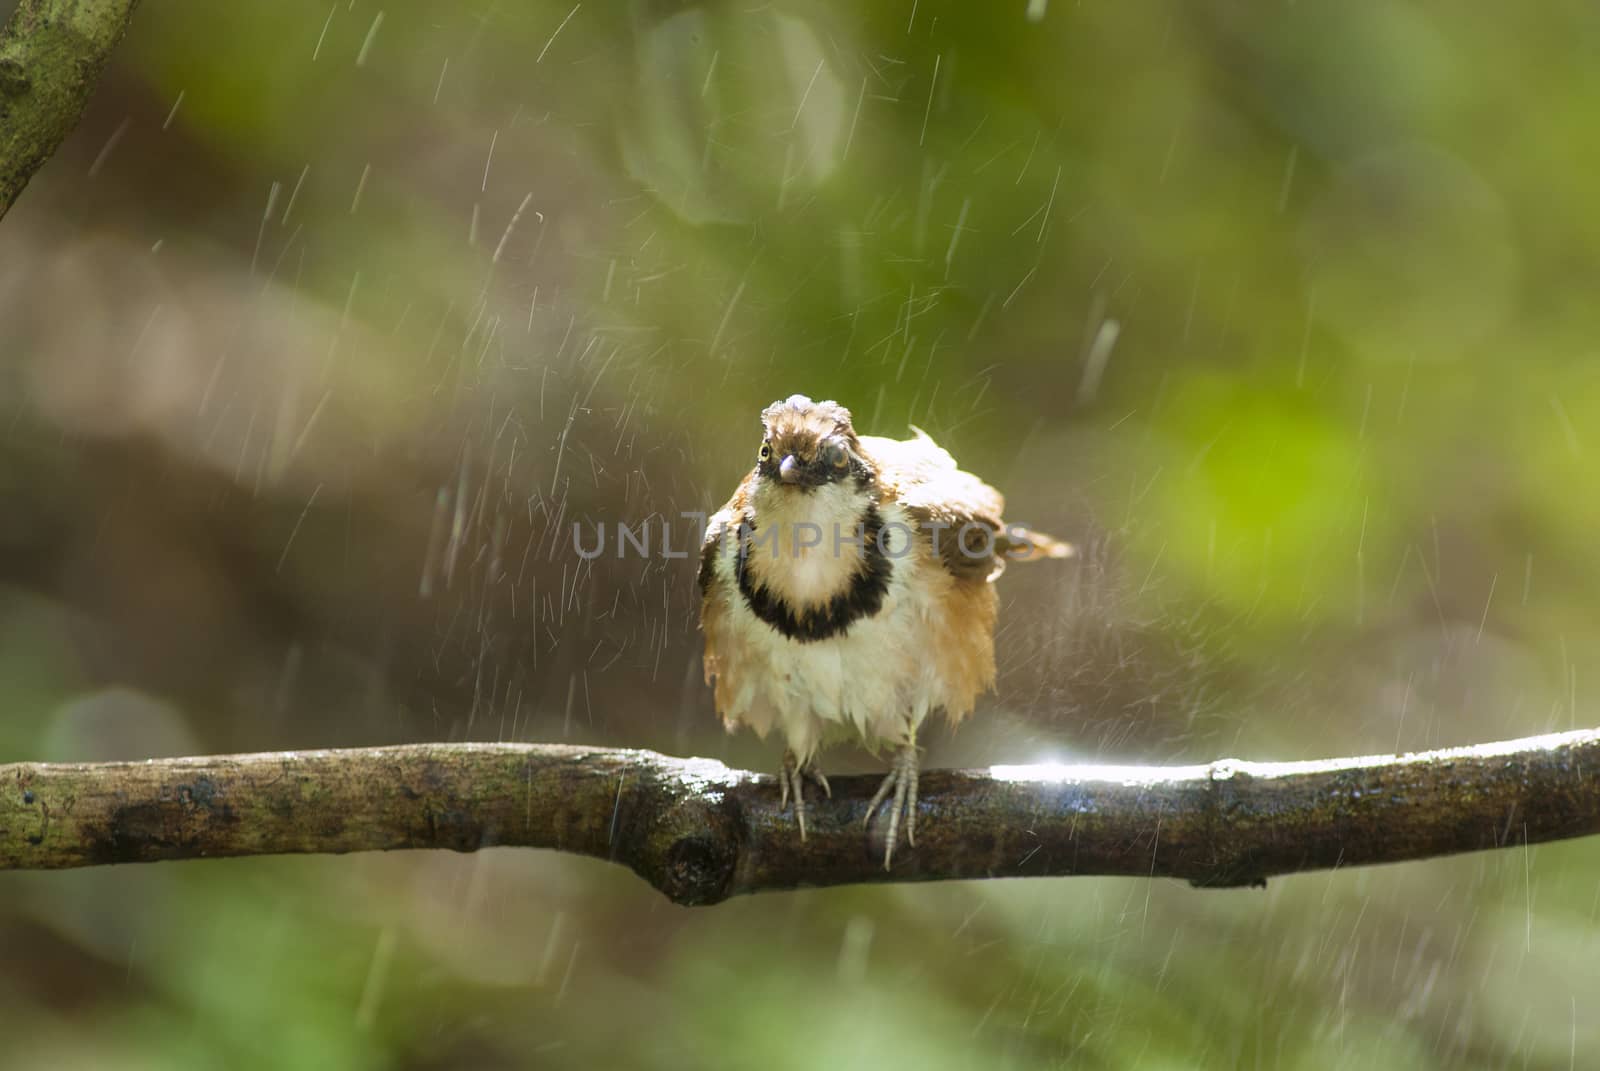 A beautiful bird in the wild Asia.In the rain.